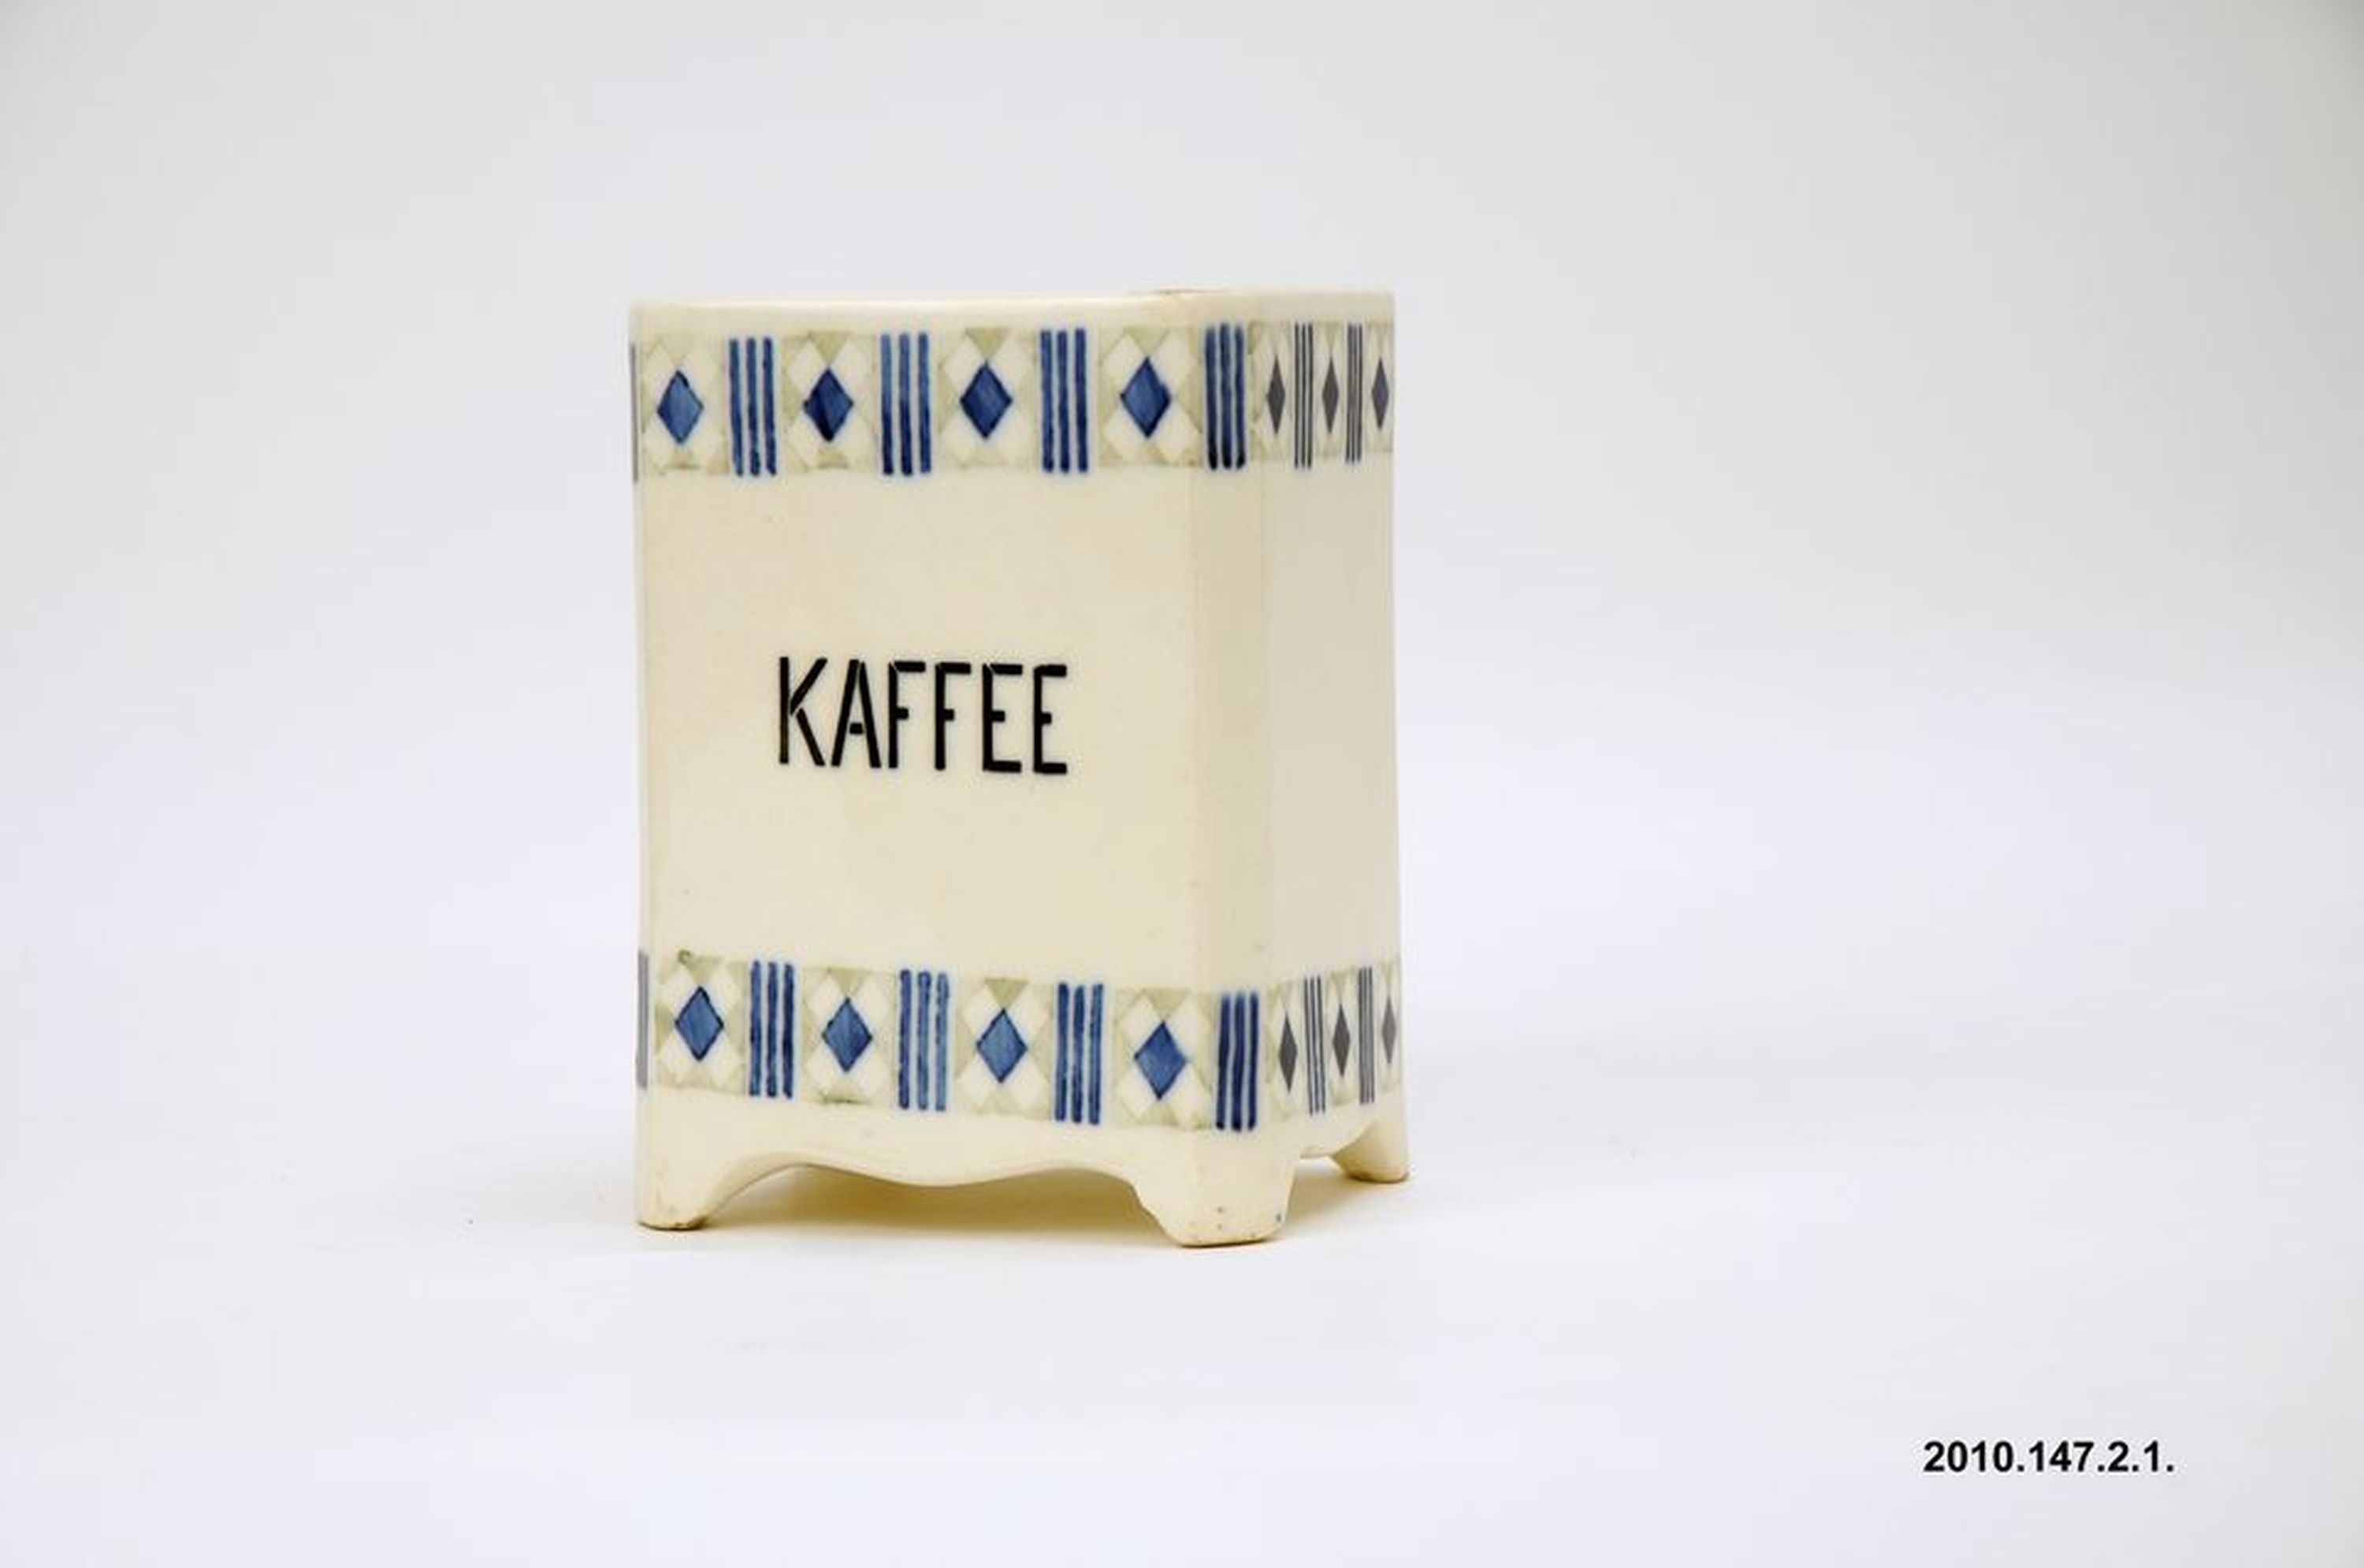 Kerámia fűszertartó "Kaffee" felirattal (Óbudai Múzeum CC BY-NC-SA)